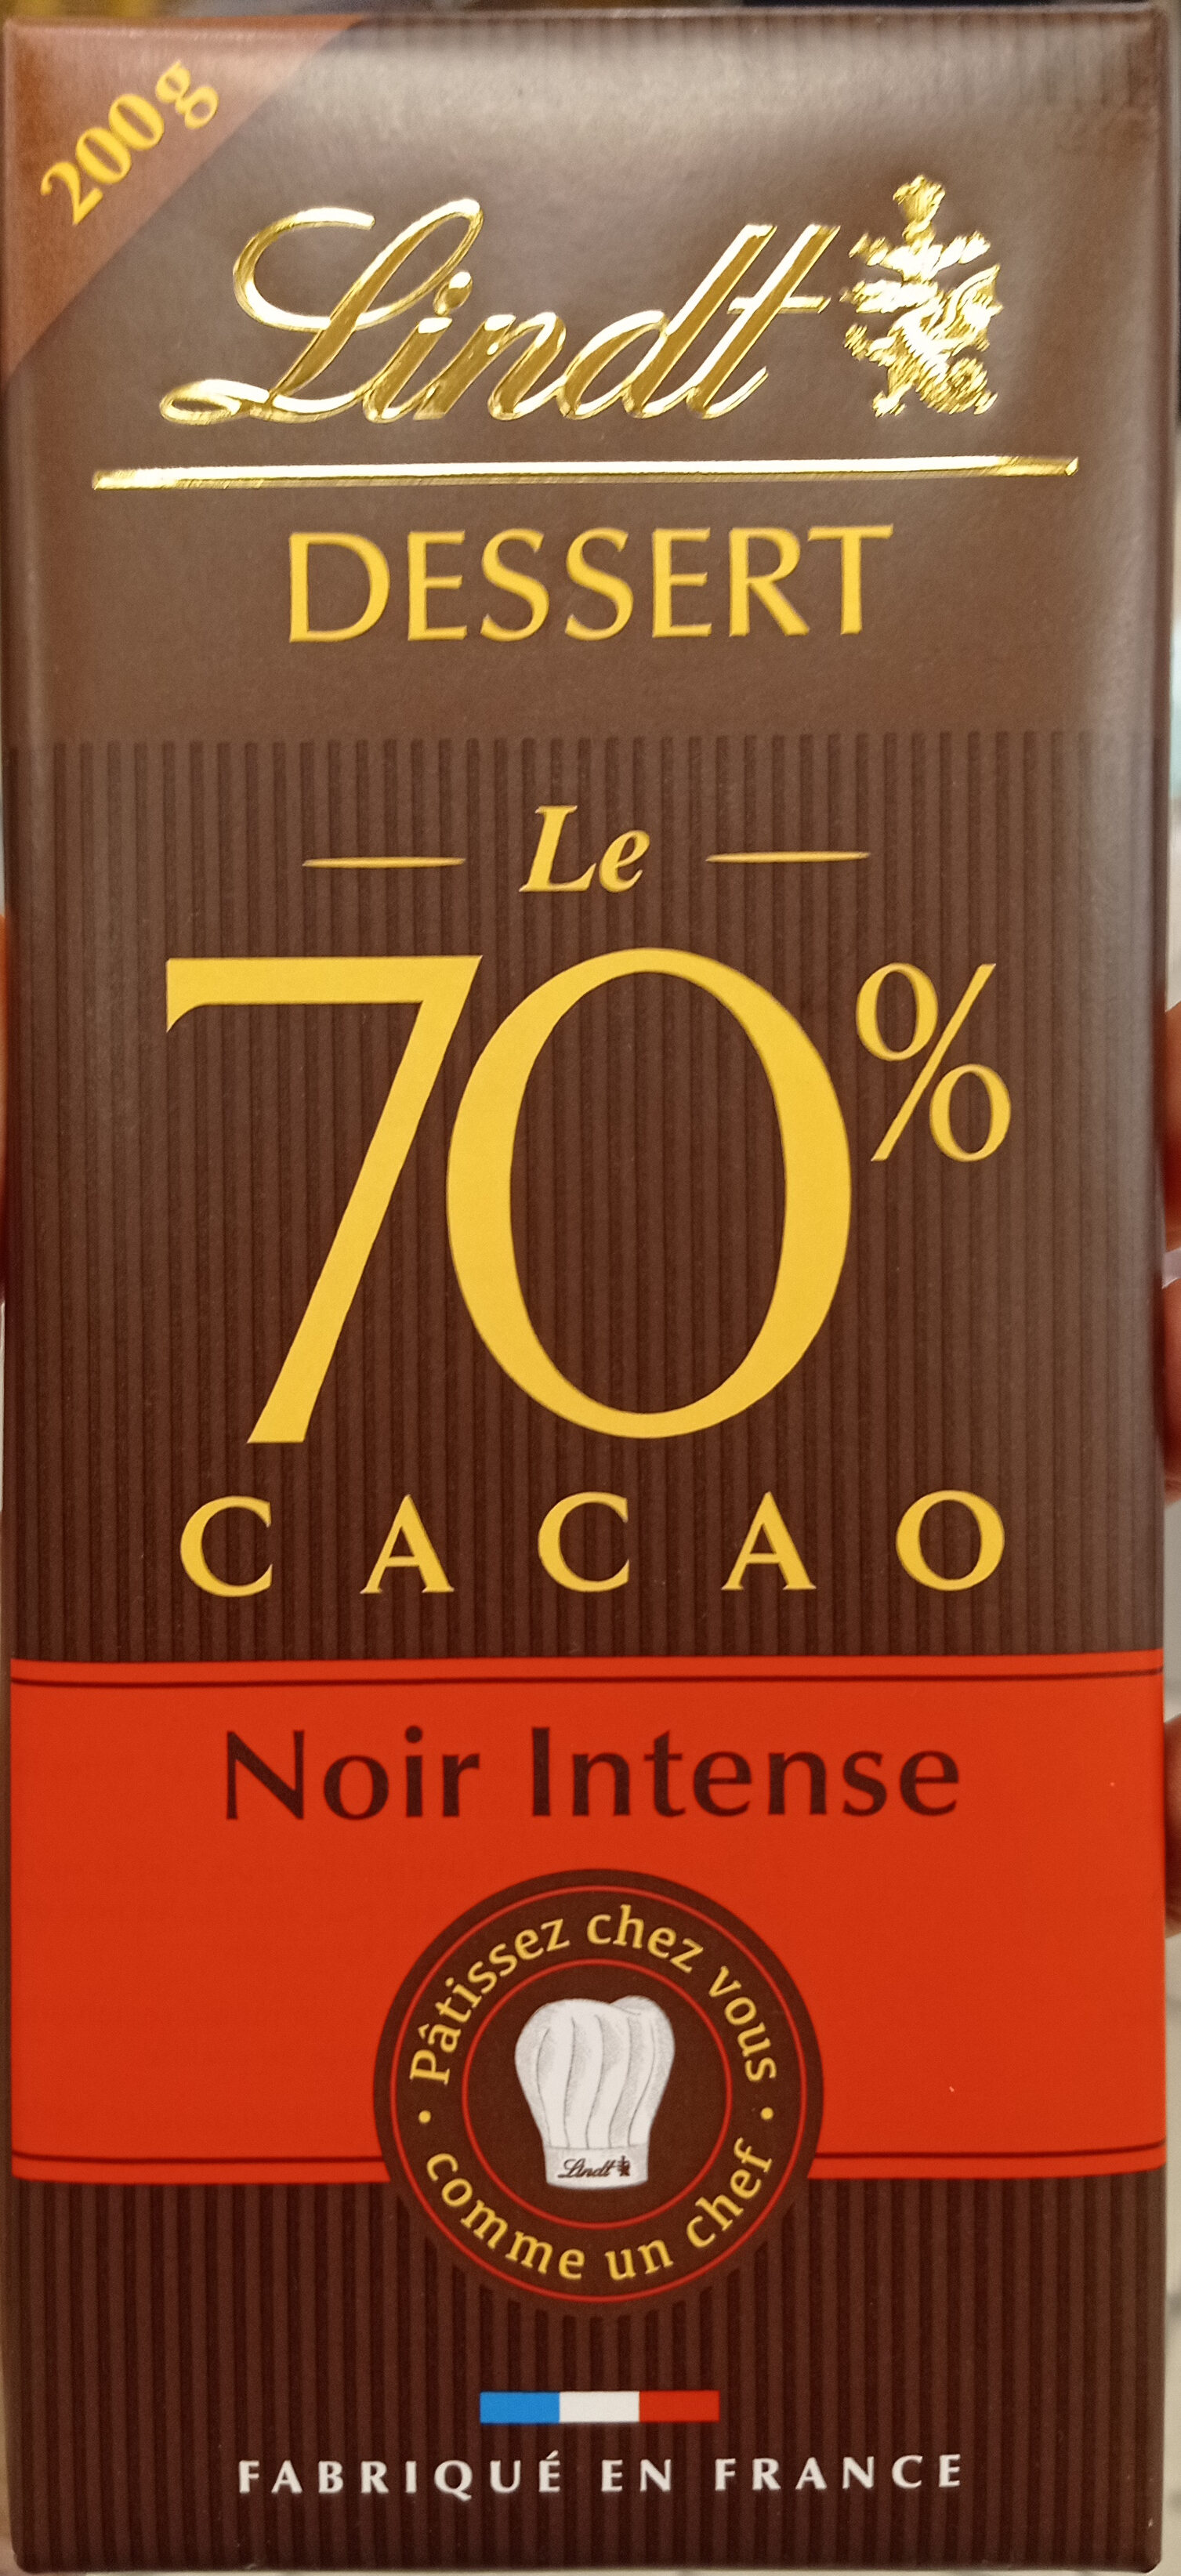 Noir intense dessert 70% - Produit